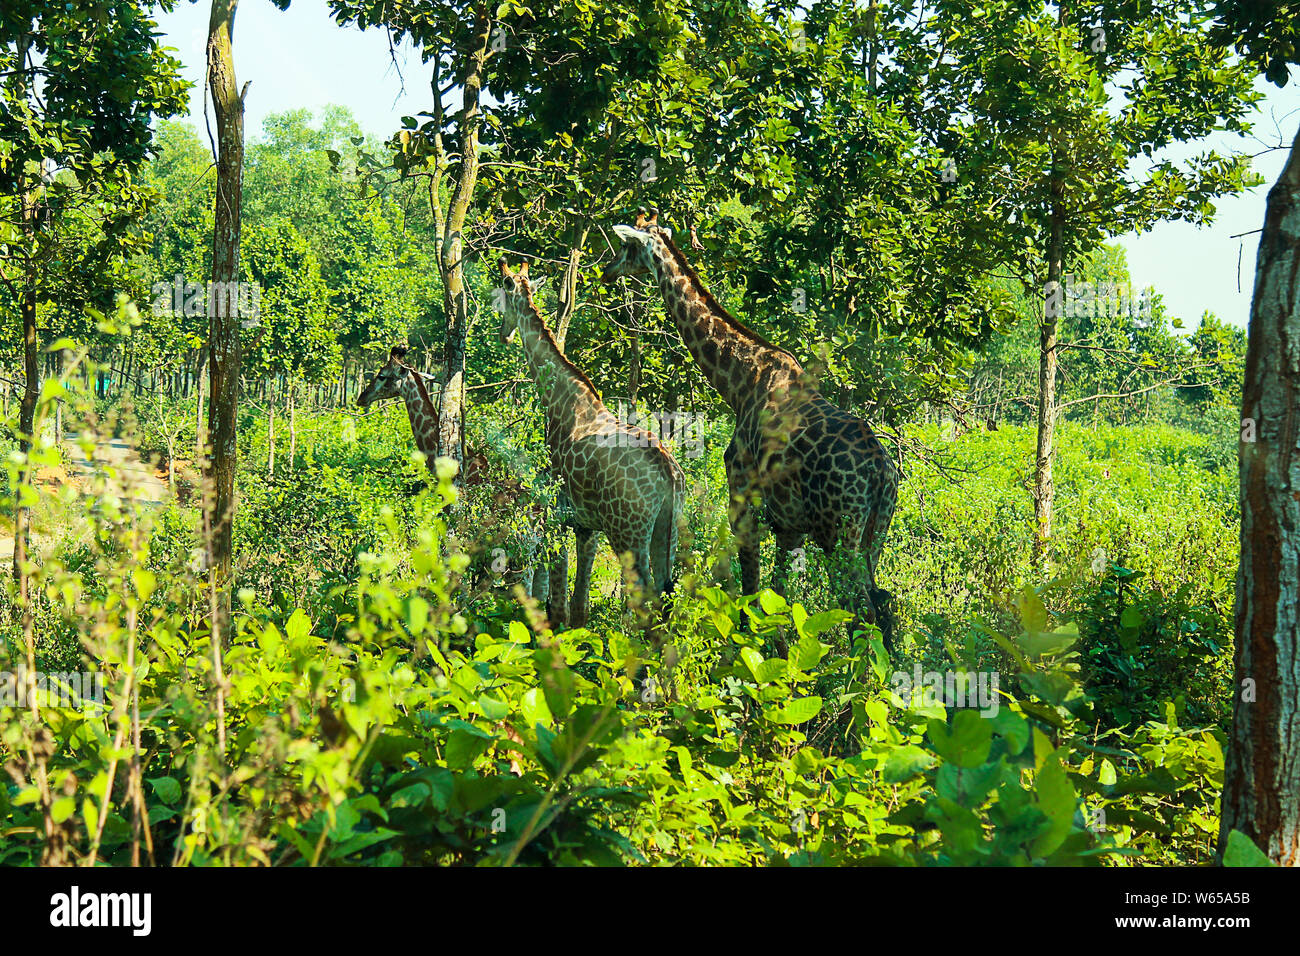 La Girafe (Giraffa) est un mammifère ongulé à longs doigts même, le plus grand animal terrestre vivant et le plus grand ruminant. Il est traditionnellement con Banque D'Images